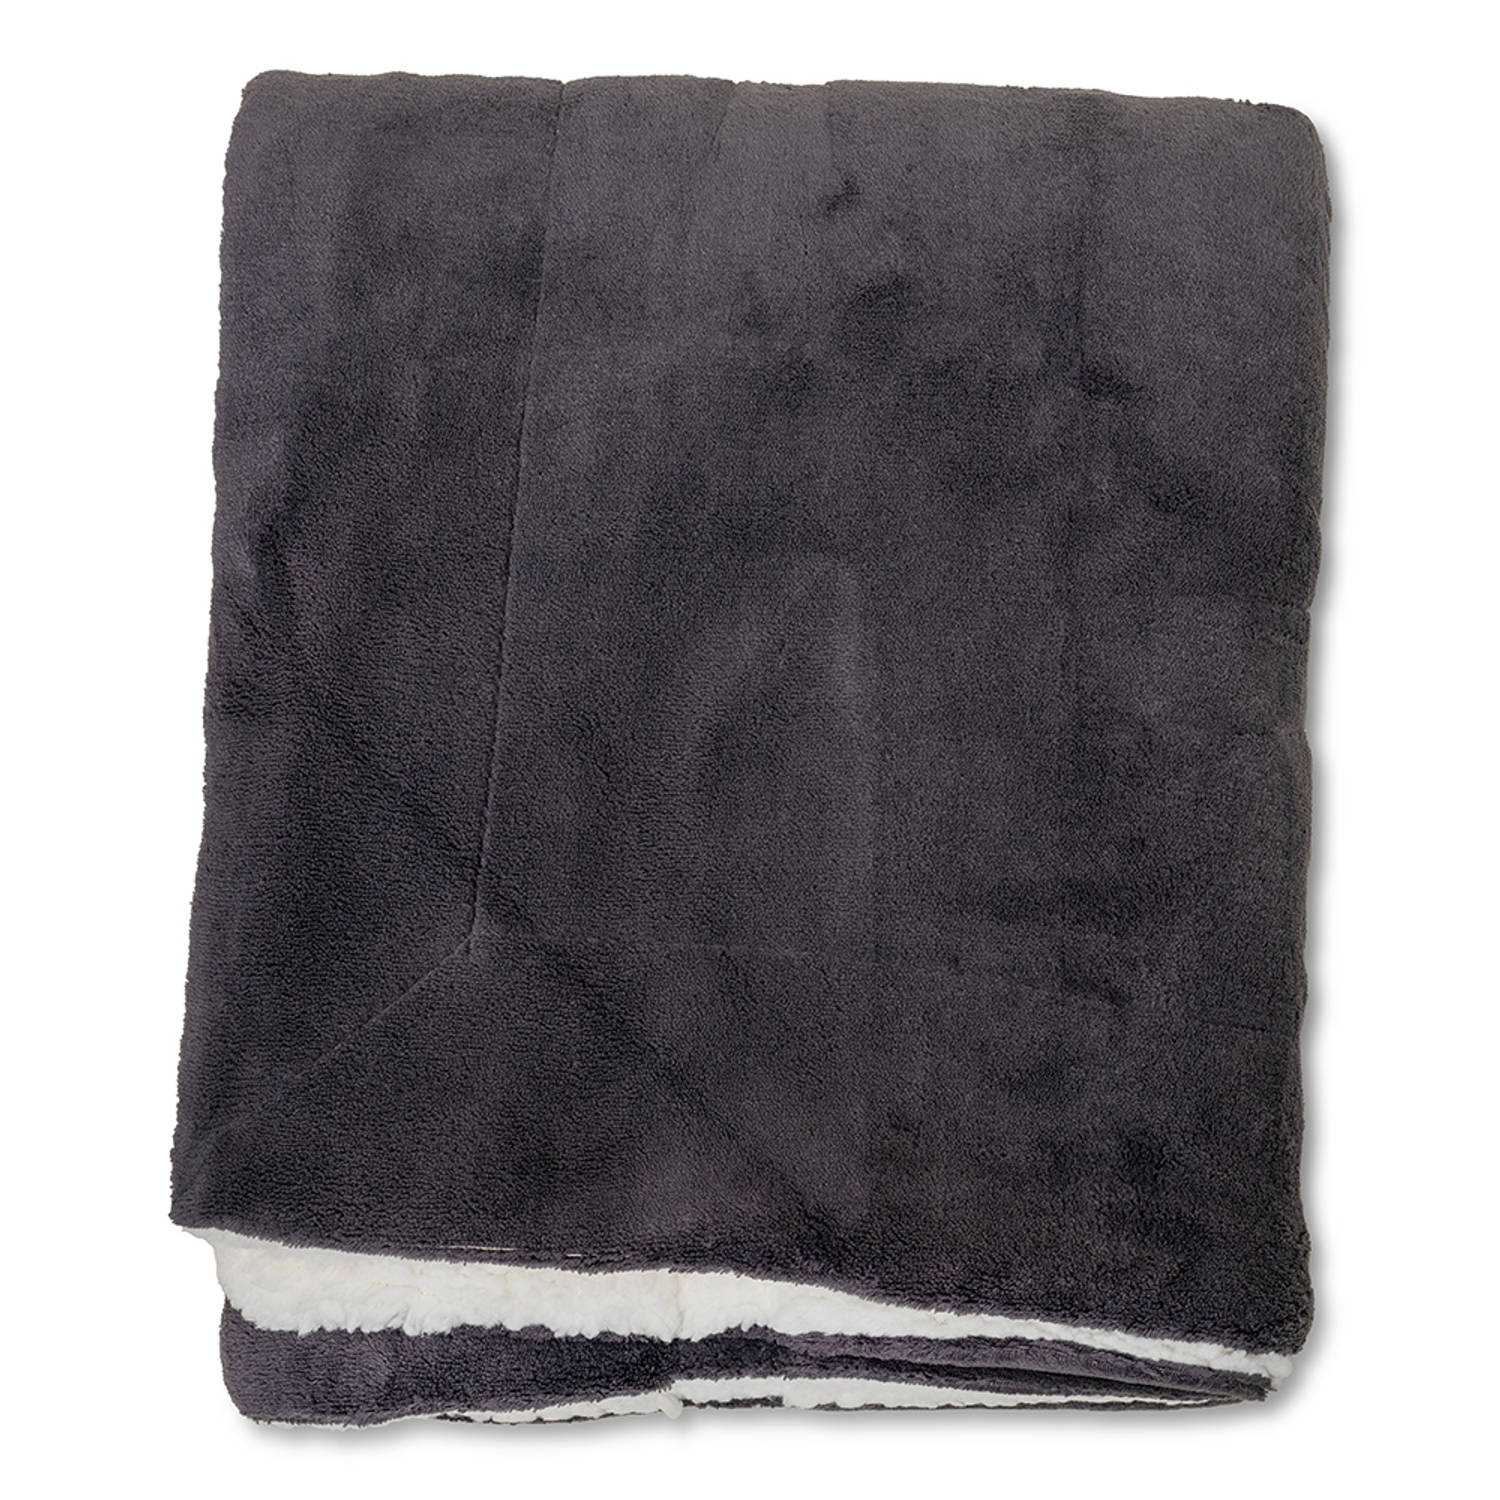 Wicotex-Plaid-deken-fleece plaid Espoo zwart 150x200cm met witte sherpa binnenkant-Zacht en warme Fl